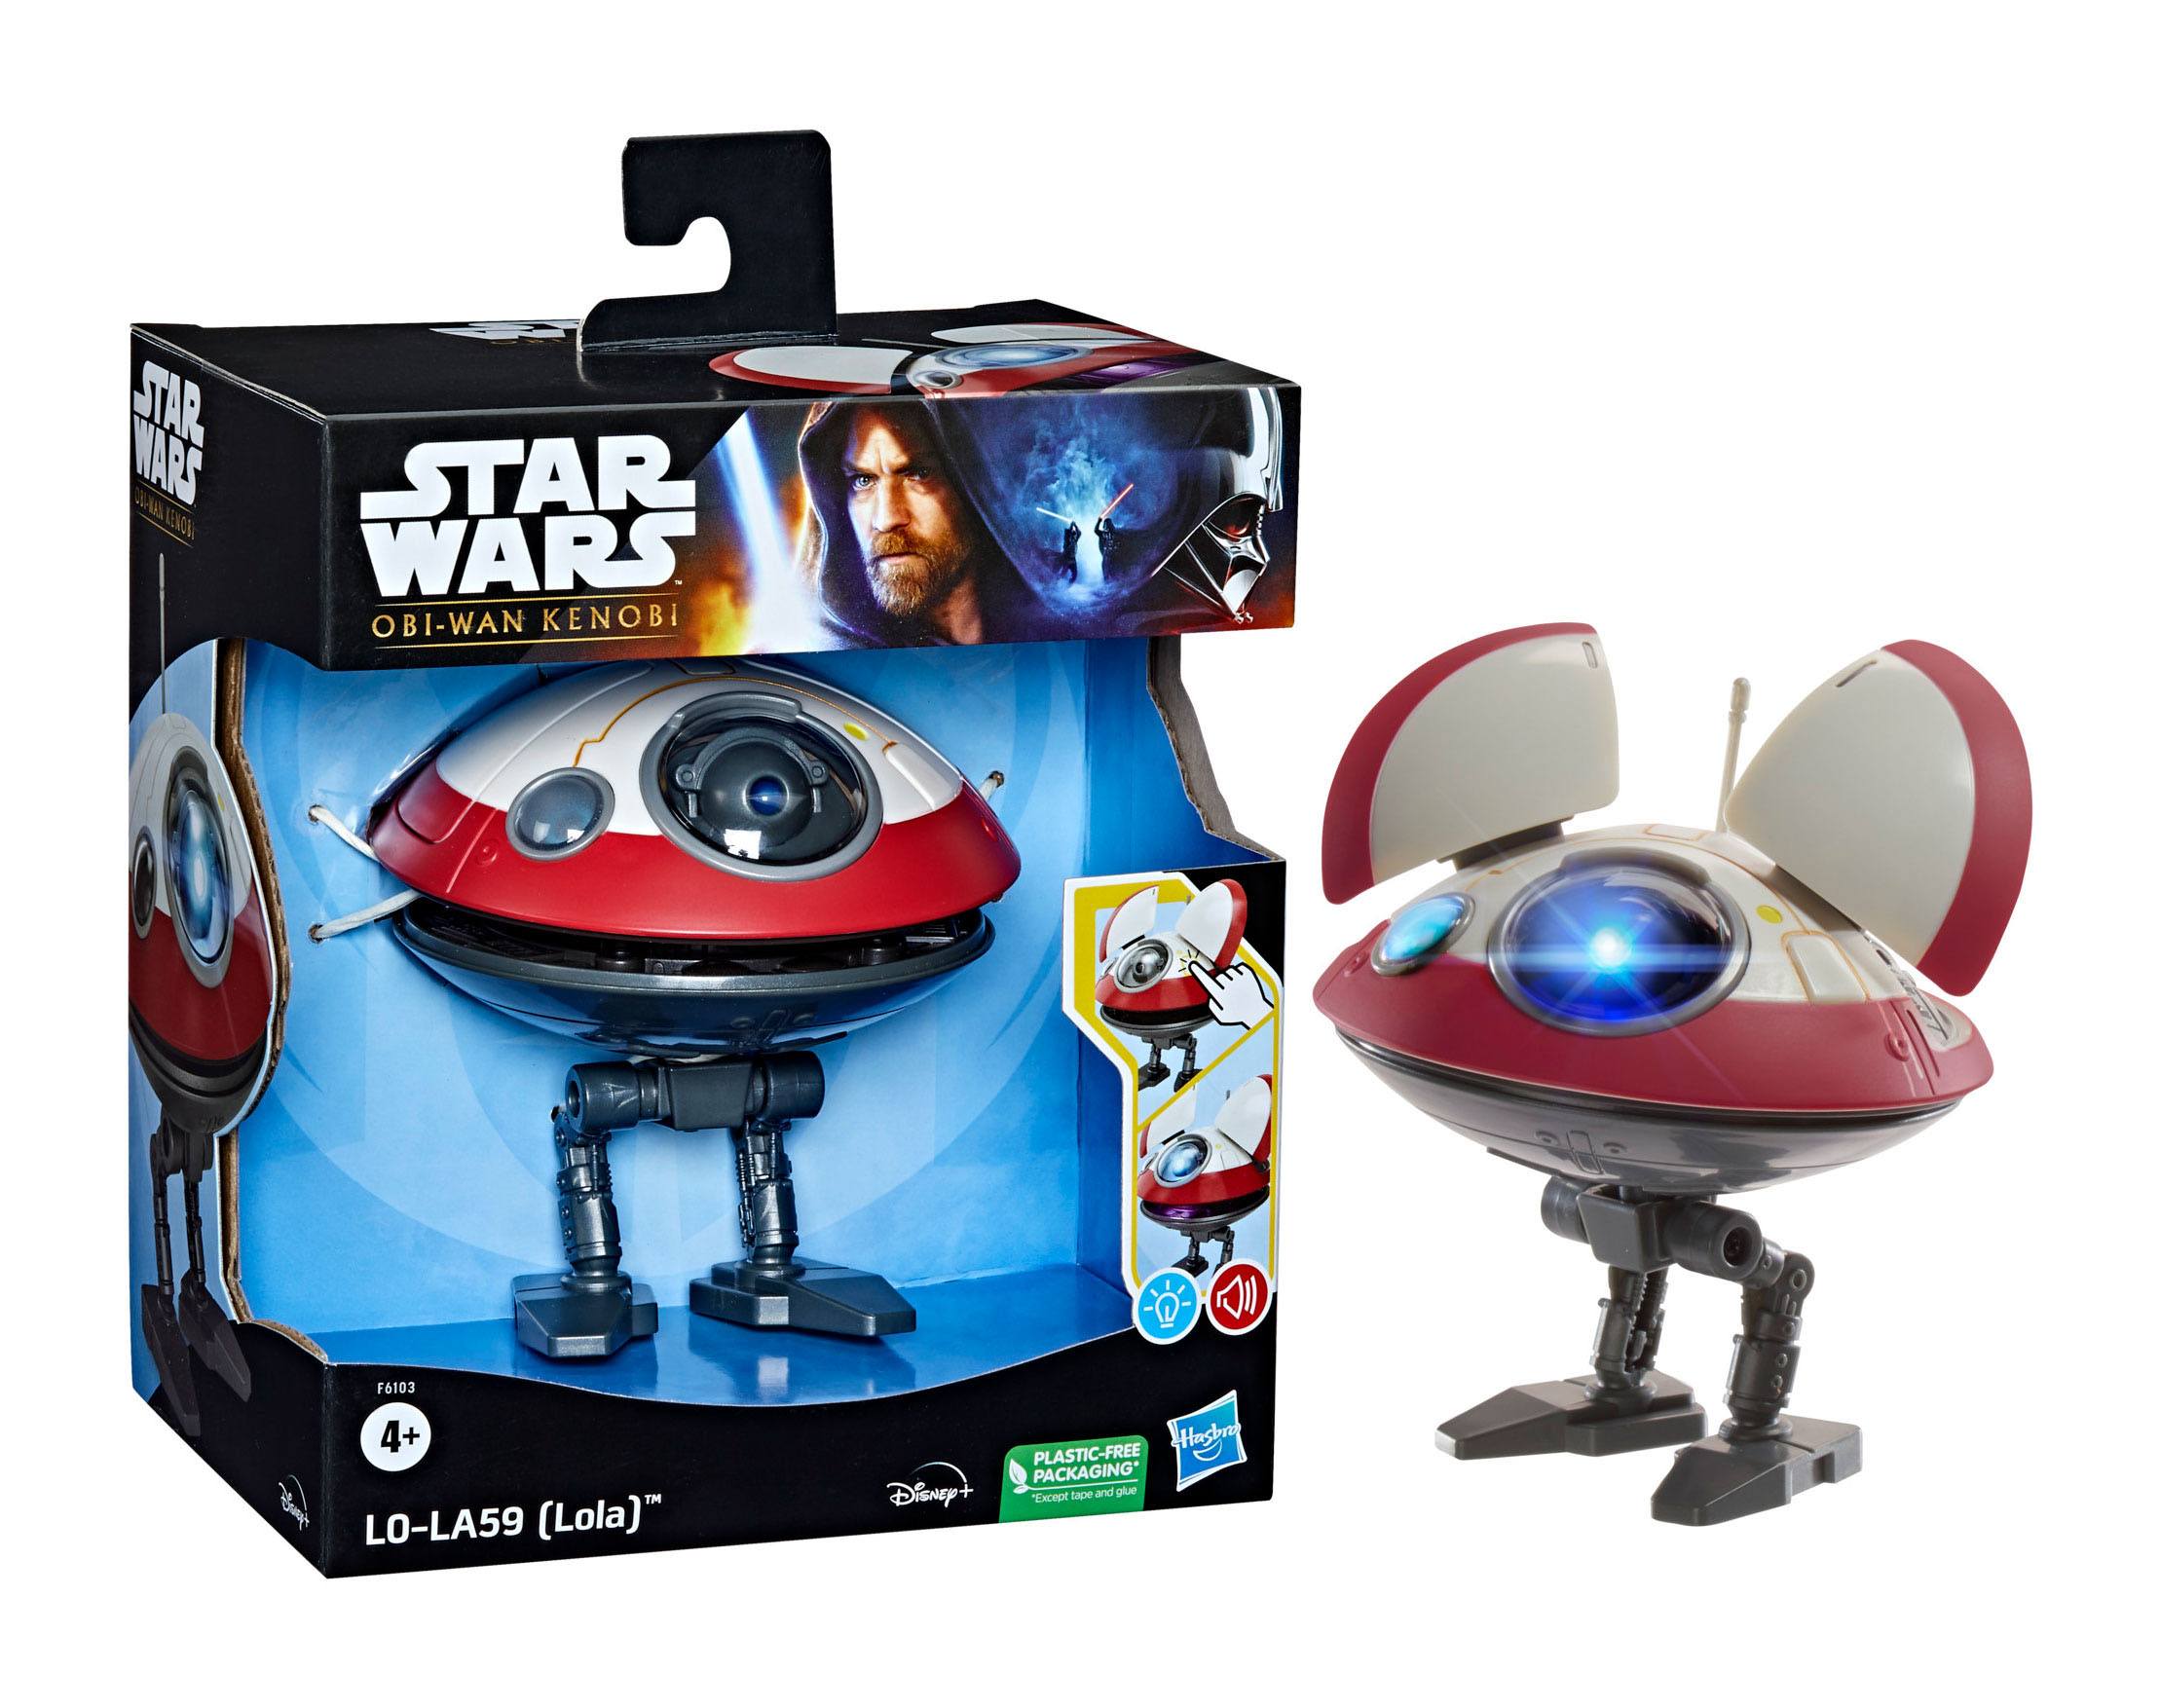 Star Wars: Obi-Wan Kenobi Elektronische Figur LO-LA59 (Lola) 13 cm F61035L00 5010994138561